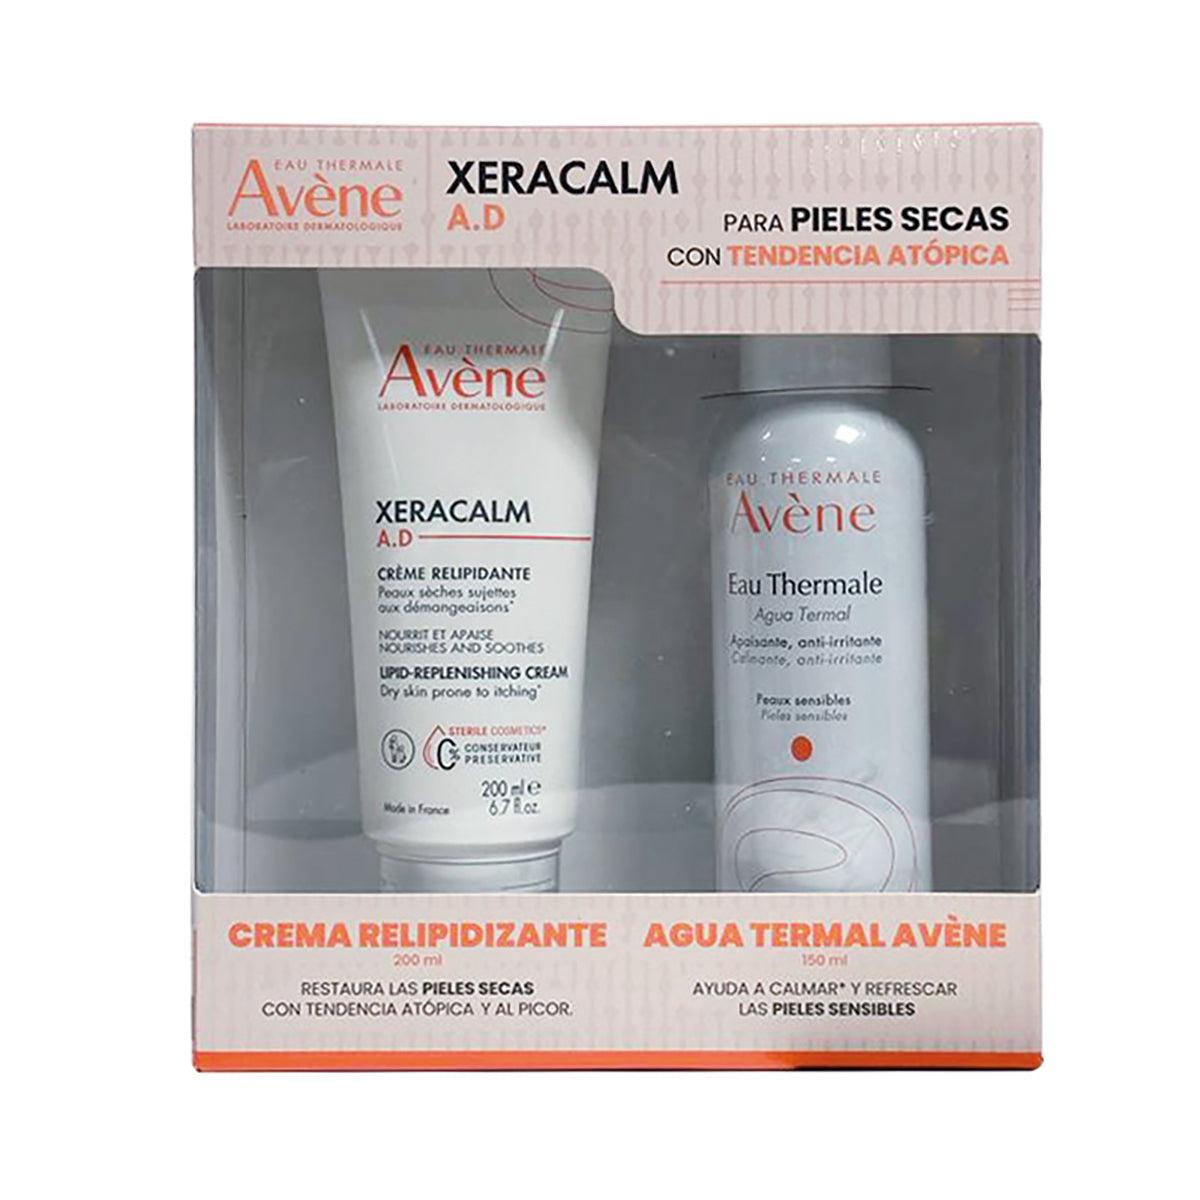 Avene kit Xeracalm a.d crema 200ml + Agua termal 150ml. – Derma Express MX